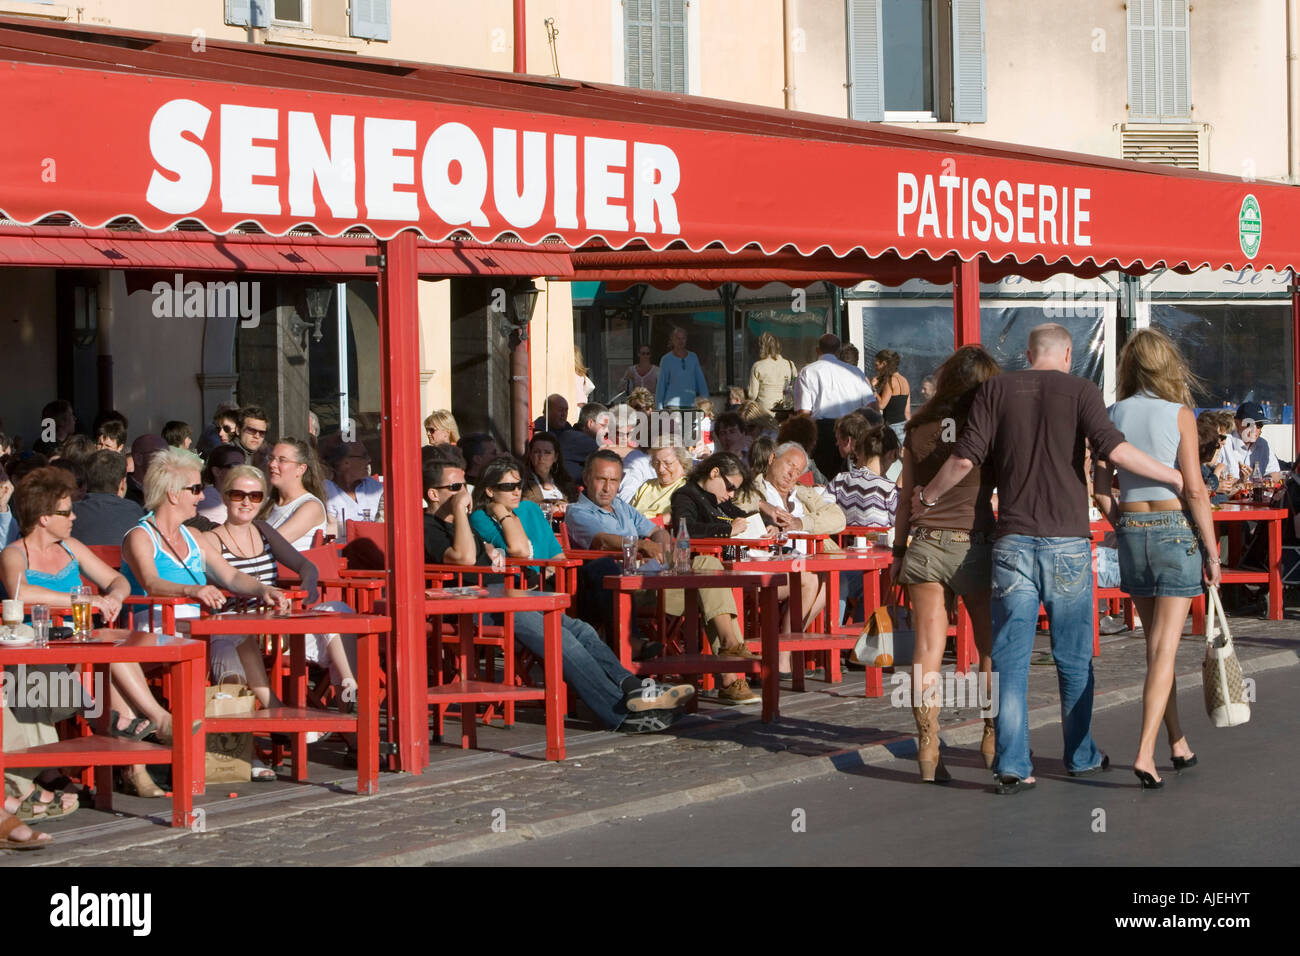 Saint Tropez, View of the Cafe Sénéquier Stock Photo